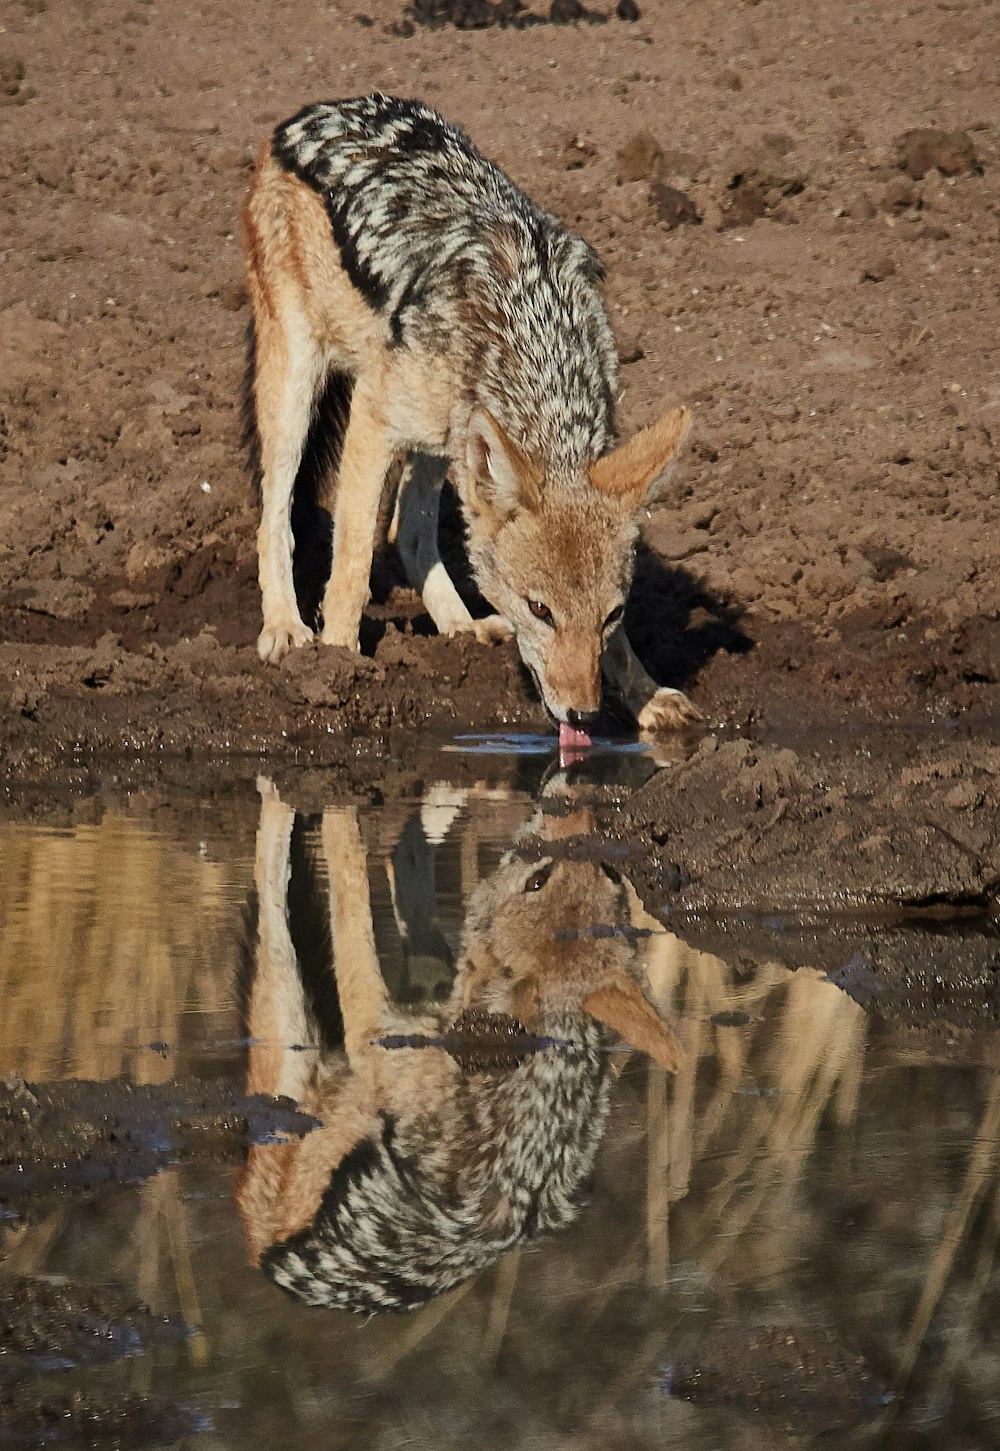 Animal de 4 patas marrón y negro bebiendo agua durante el día